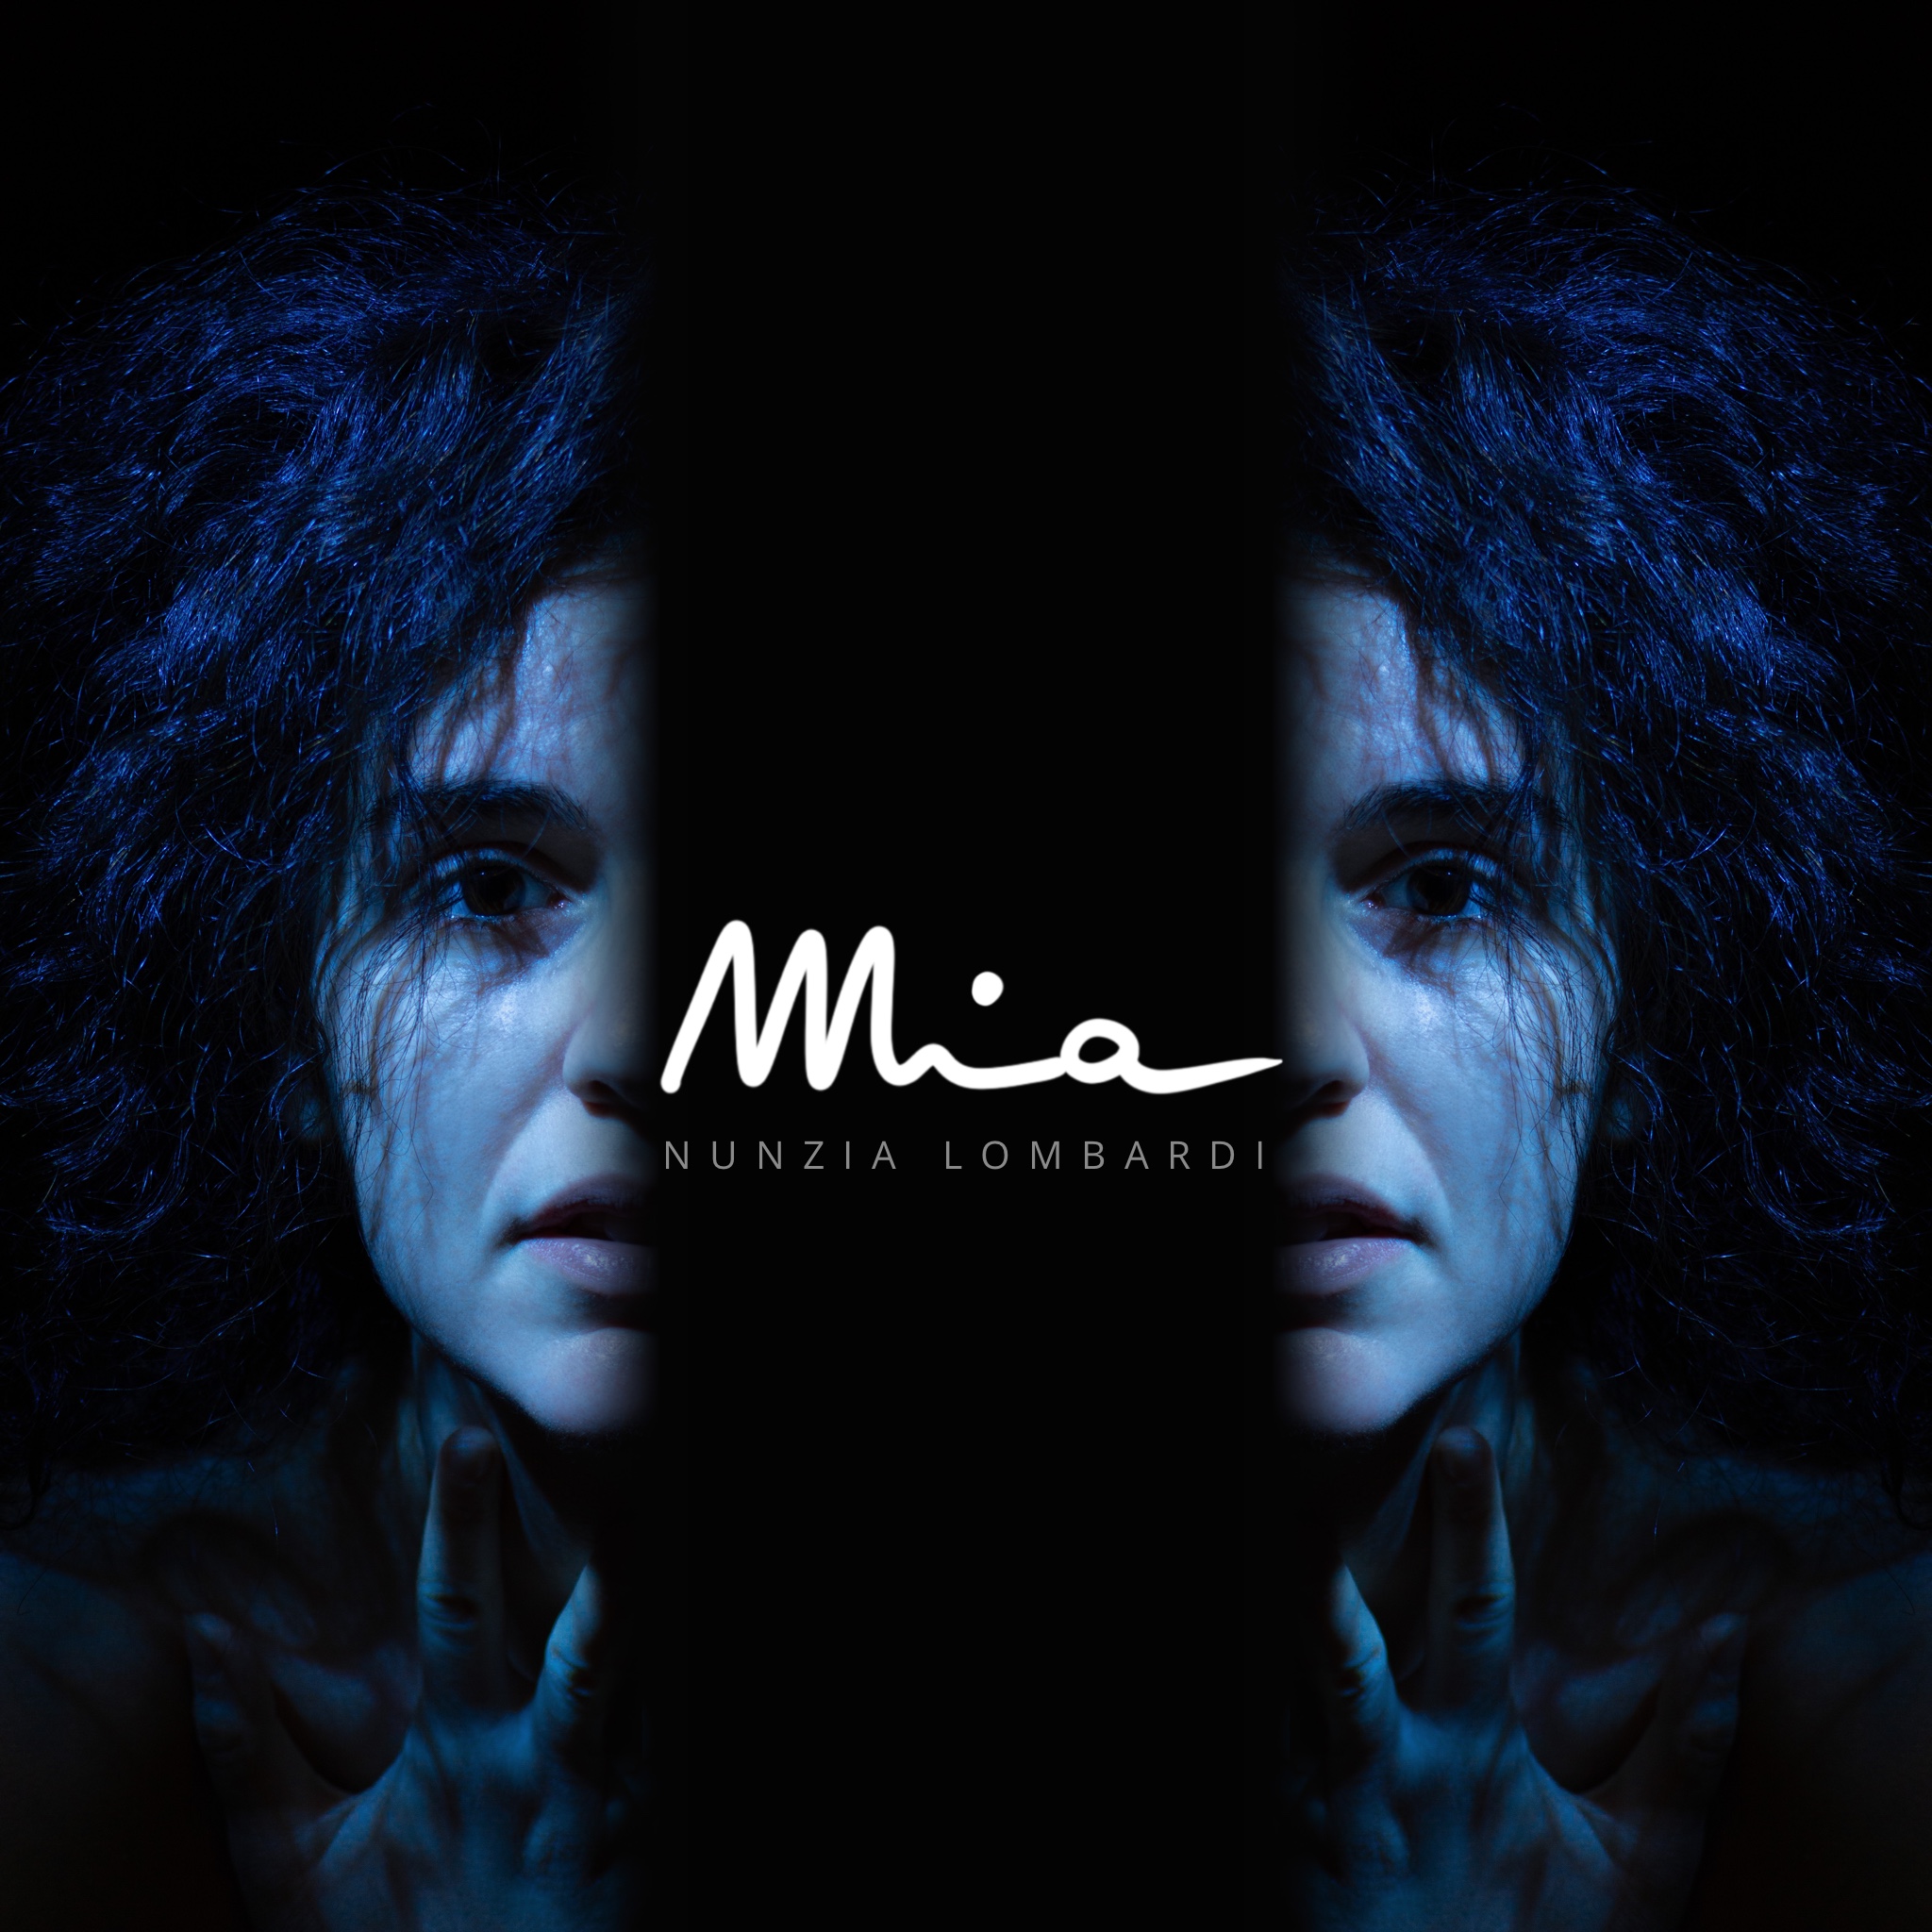 Da venerdì 7 aprile in radio “Mia” il nuovo singolo della cantautrice Nunzia Lombardi